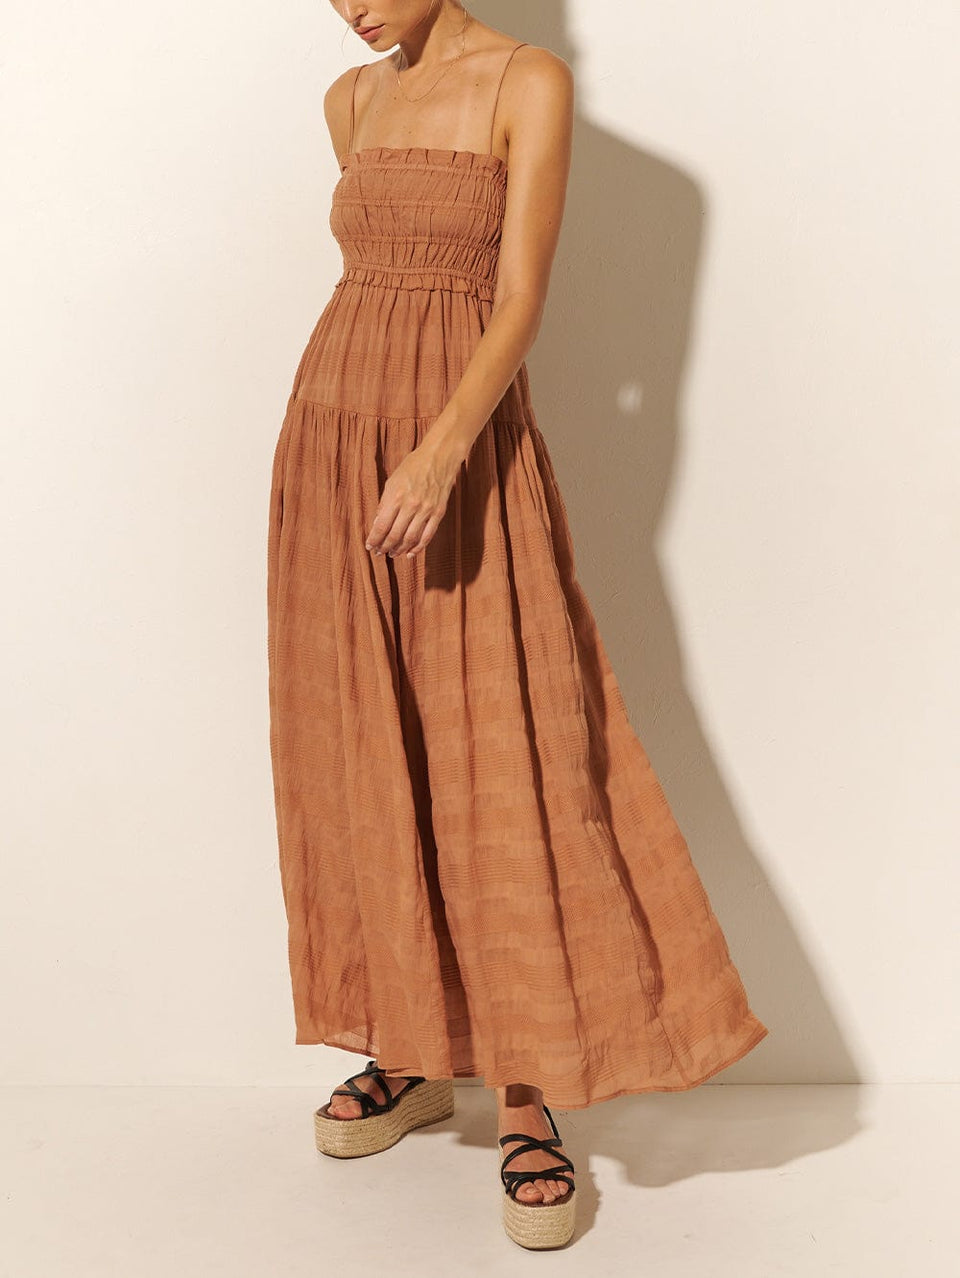 KIVARI Rylan Maxi Dress | Model wears Brown Maxi Dress